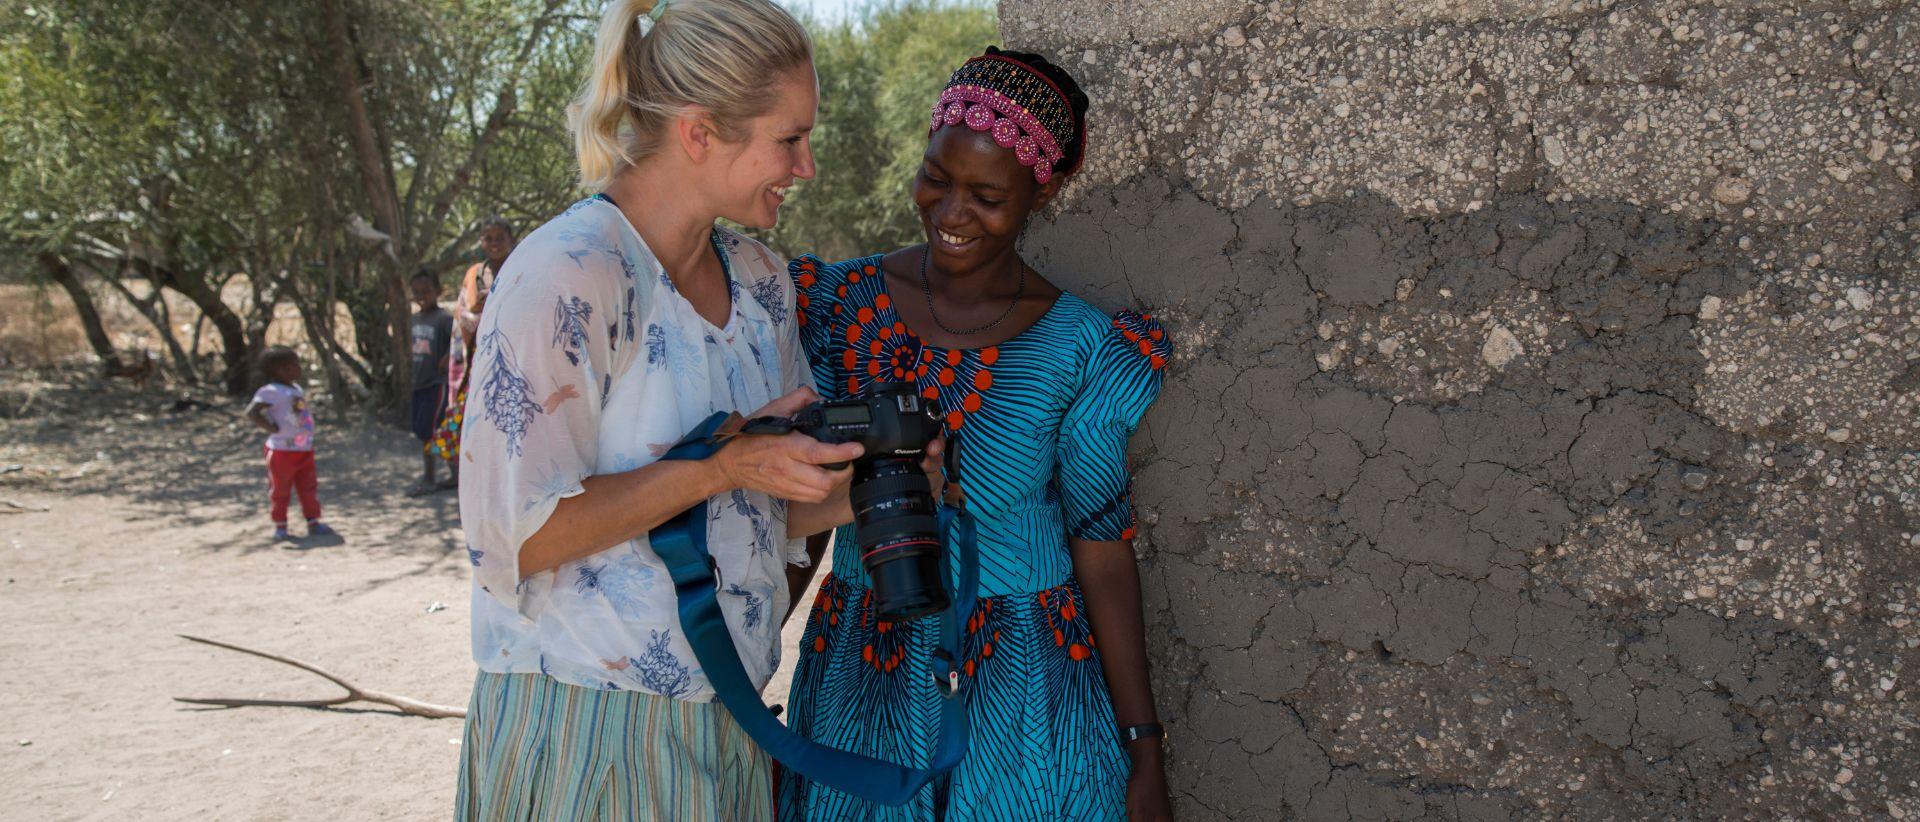 Laura Malmivaara ja kuvattava nainen katsovat kameran kuvia hymyillen.